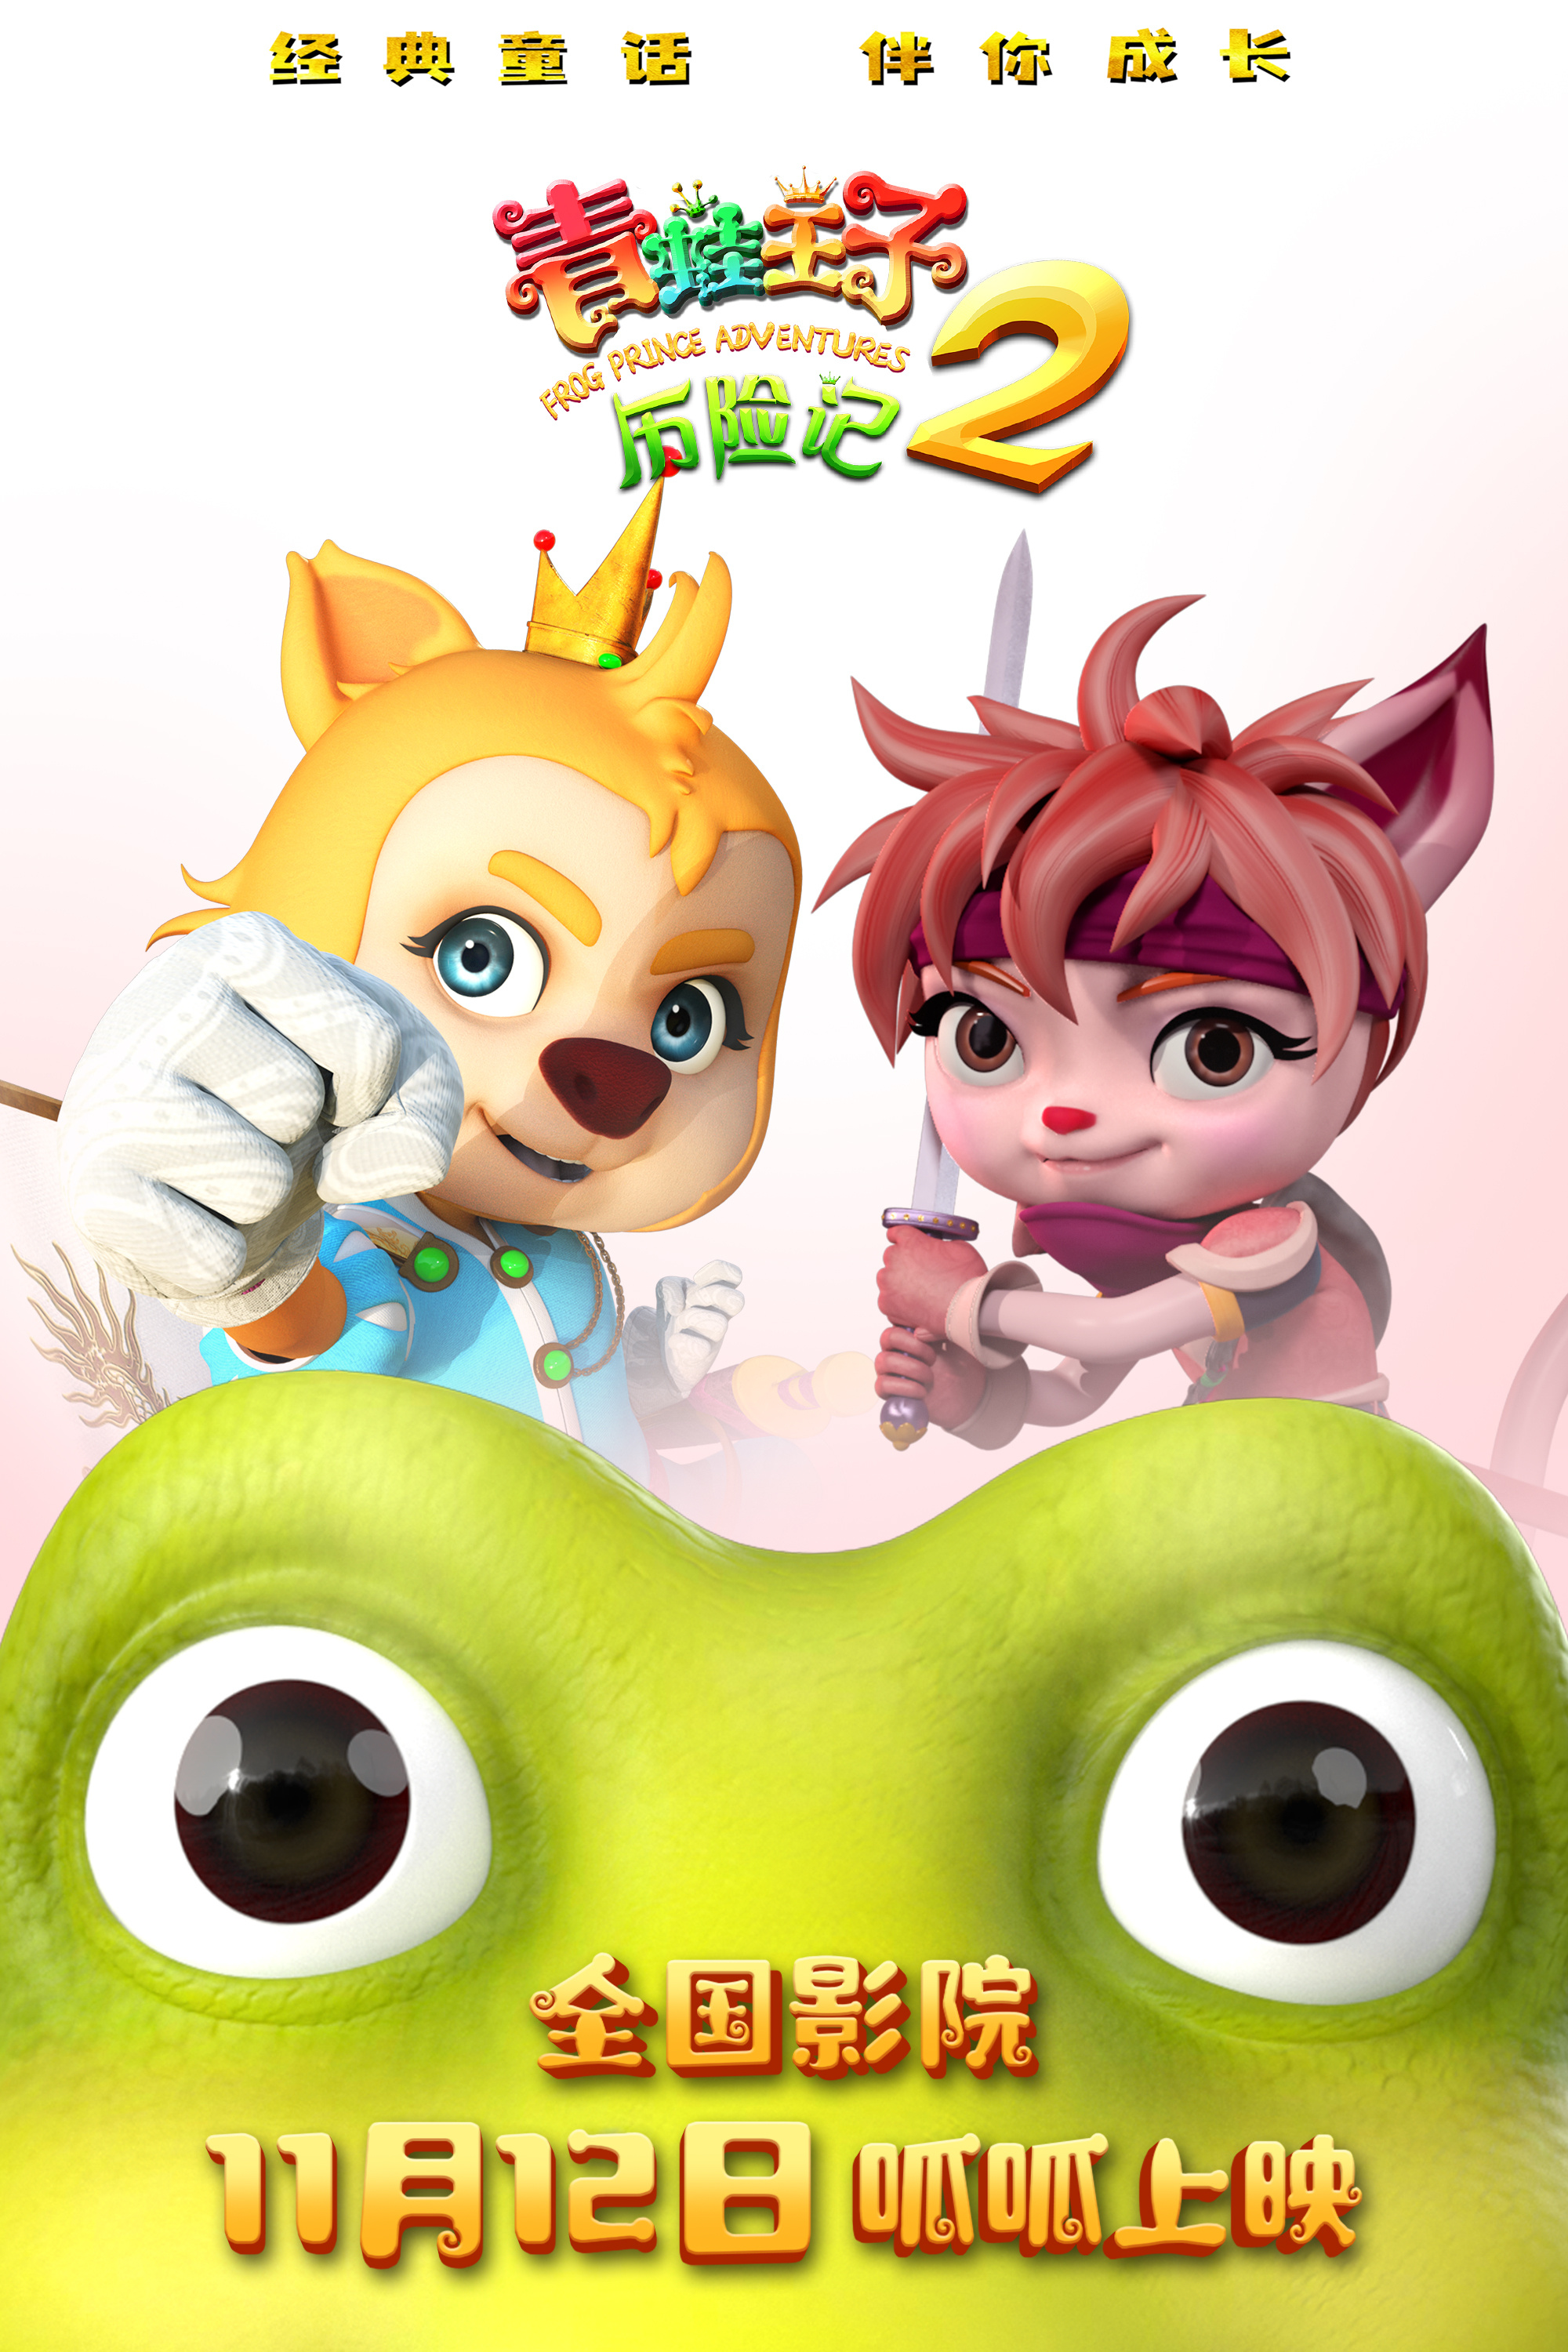 《青蛙王子历险记2》发布海报 定档11月12日上映